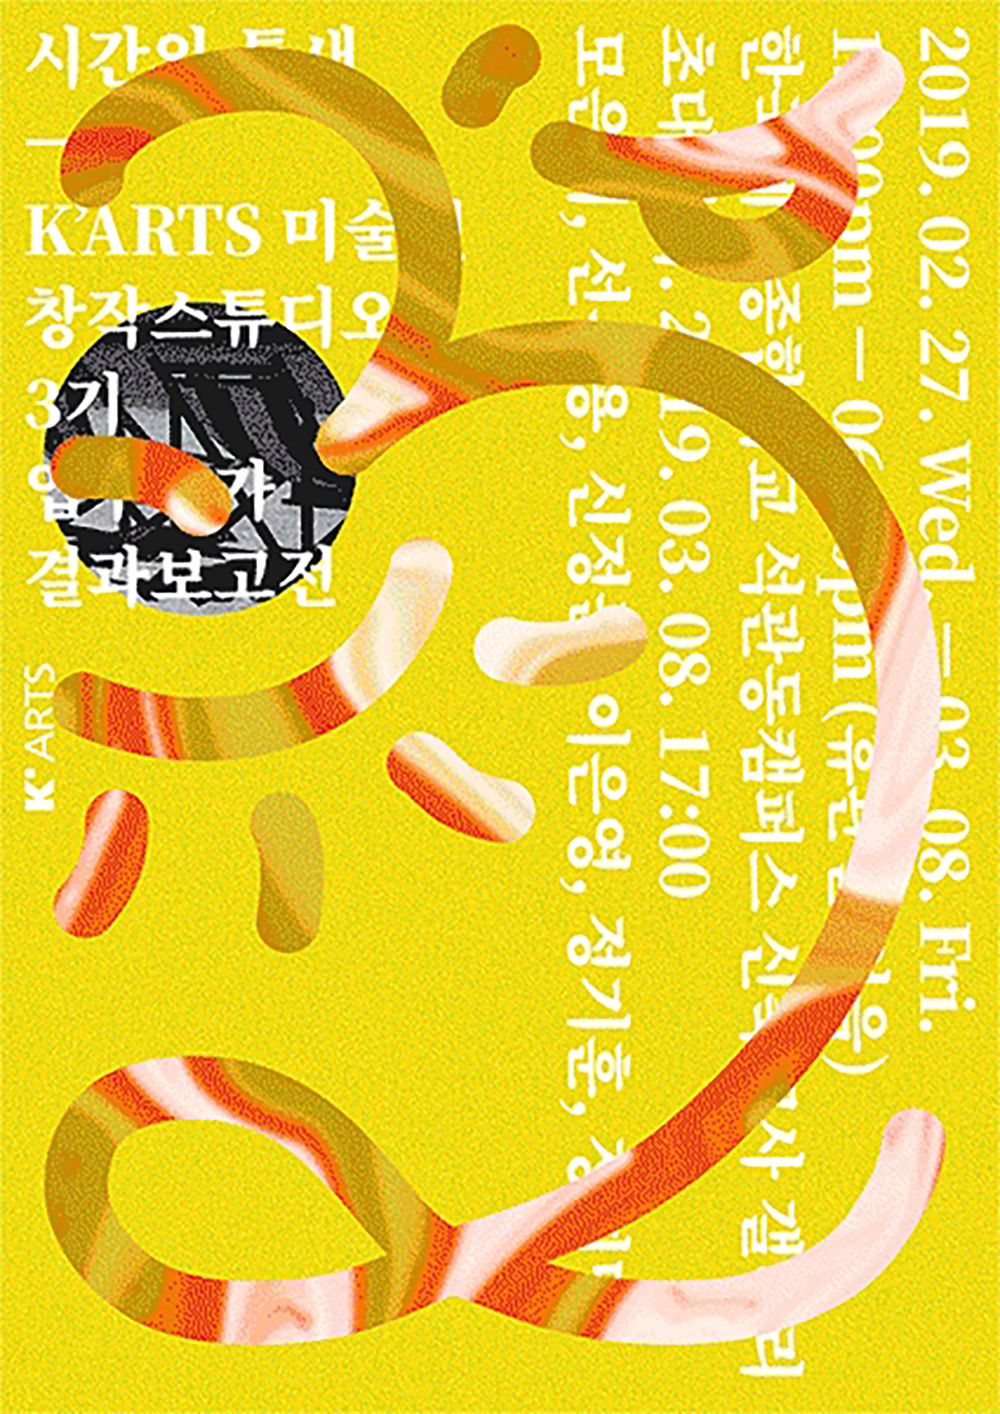 创意排版！pa-i-ka韩文主题活动海报设计